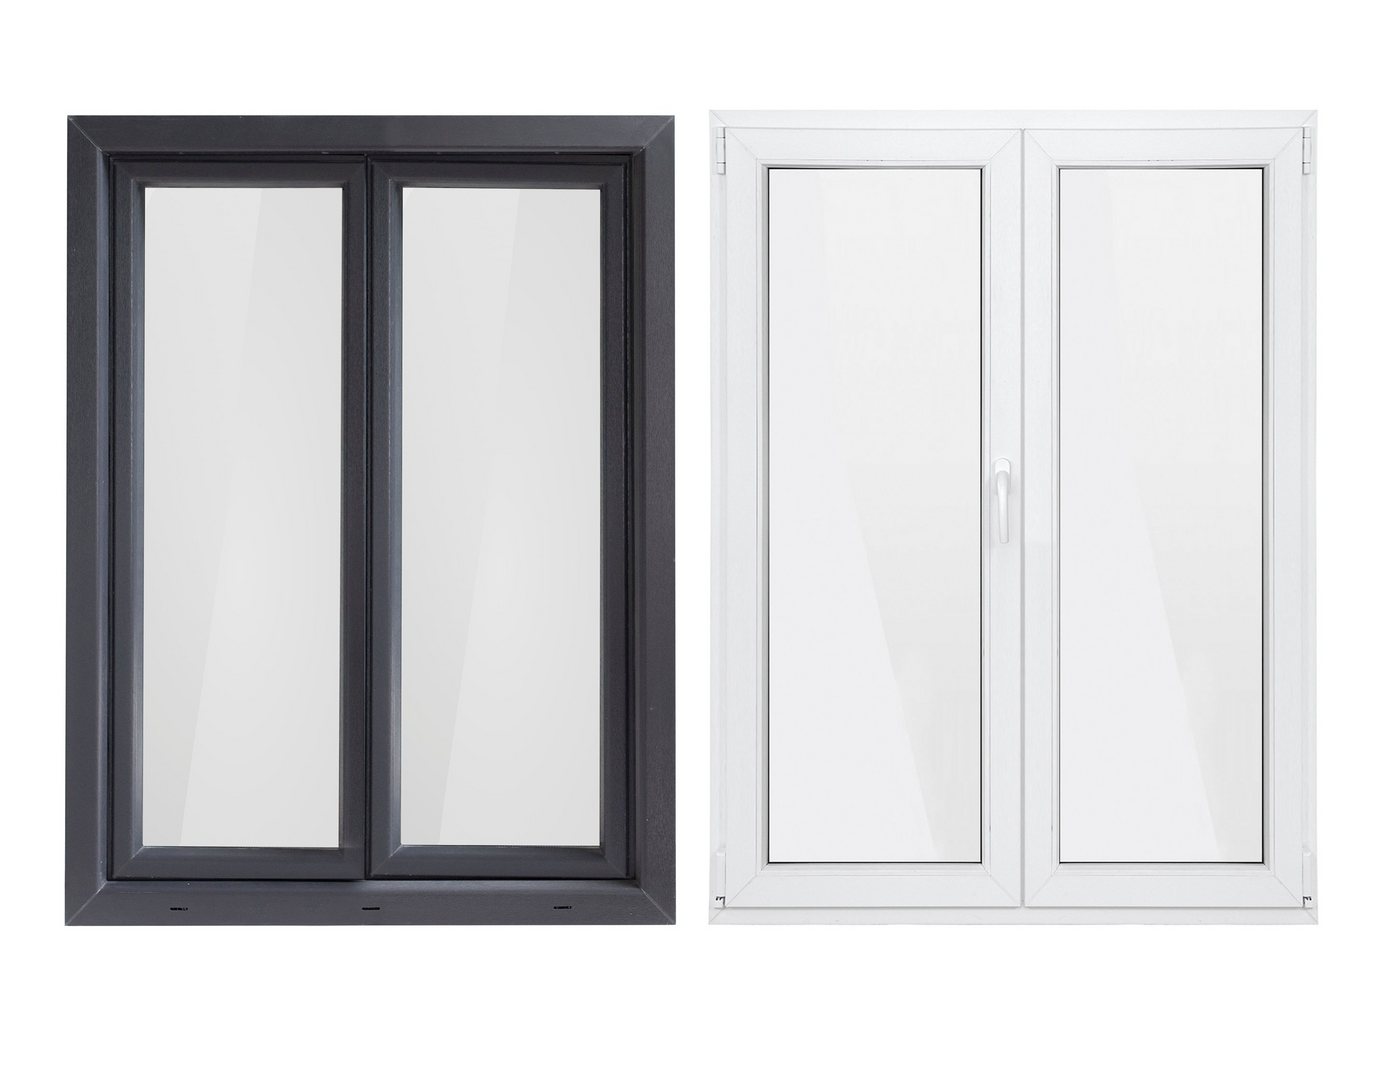 SN DECO GROUP Kunststofffenster Fenster, 2 Flügel, 900x1200, außen anthrazit/innen weiß, 70 mm Profil, (Set), RC2 Sicherheitsbeschlag, Hochwertiges 5-Kammer-Profil von SN DECO GROUP